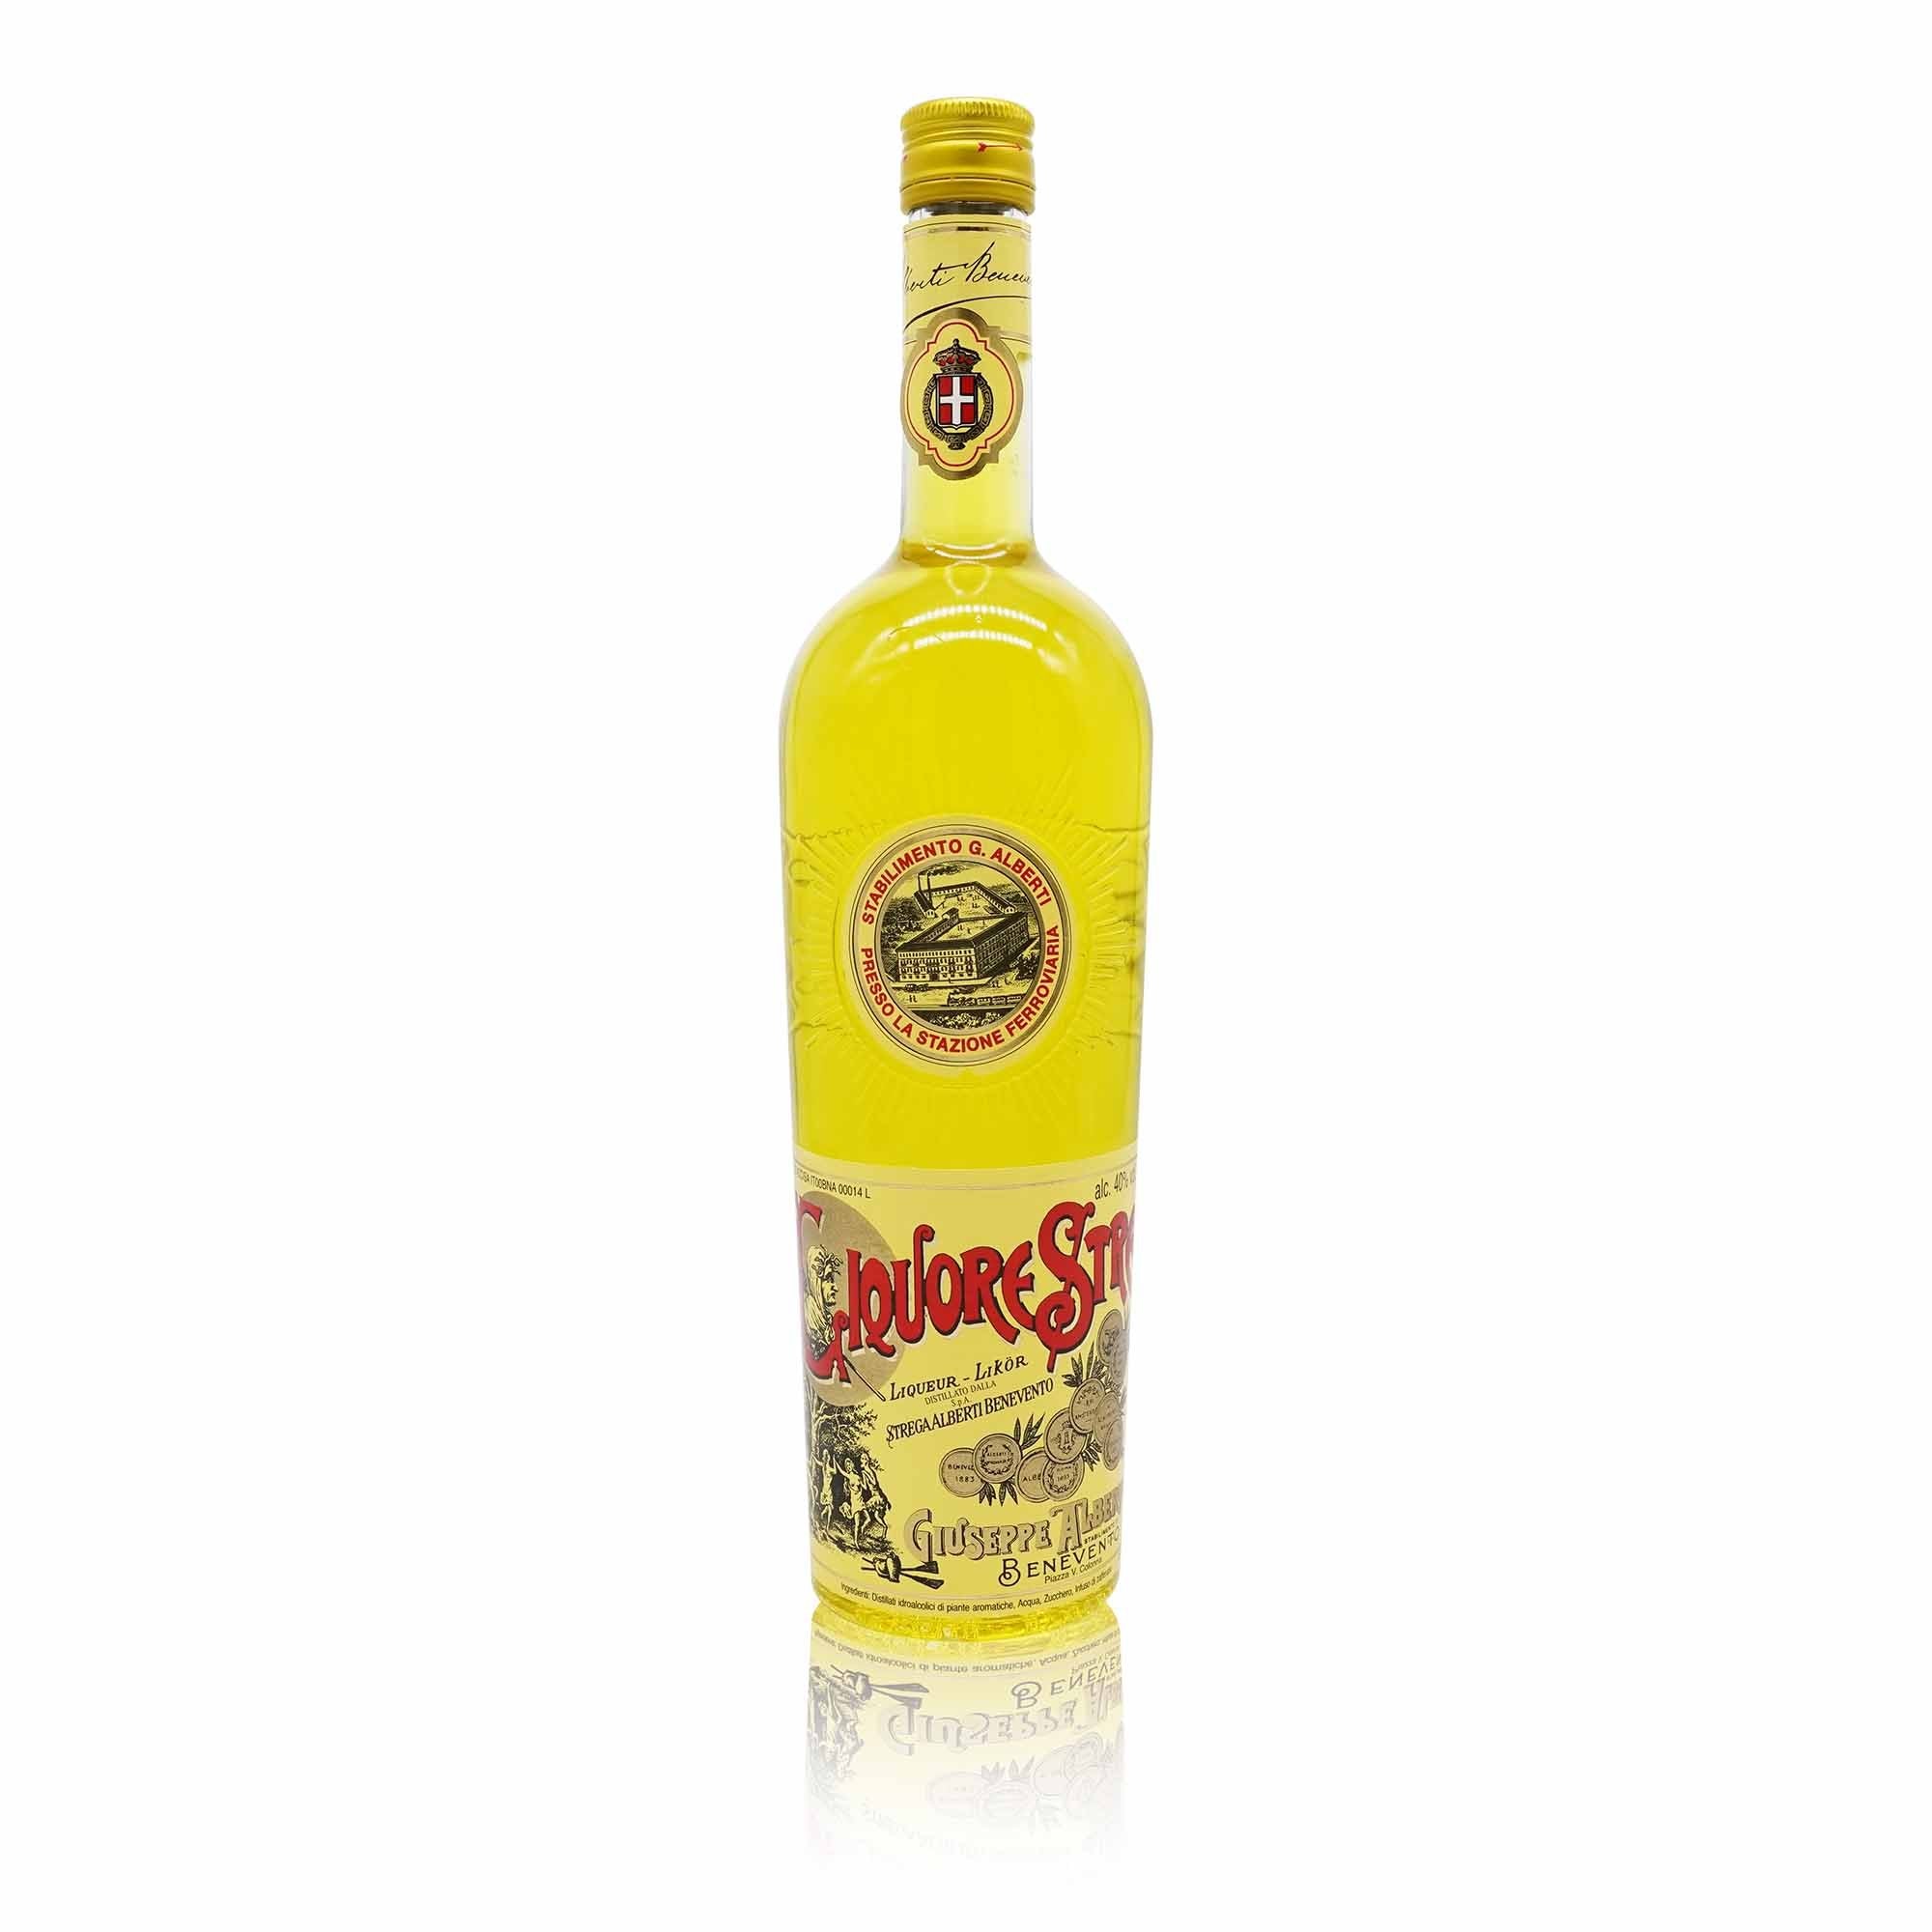 ALBERTI Liquore Strega – Likör Strega - 1l - italienisch-einkaufen.de